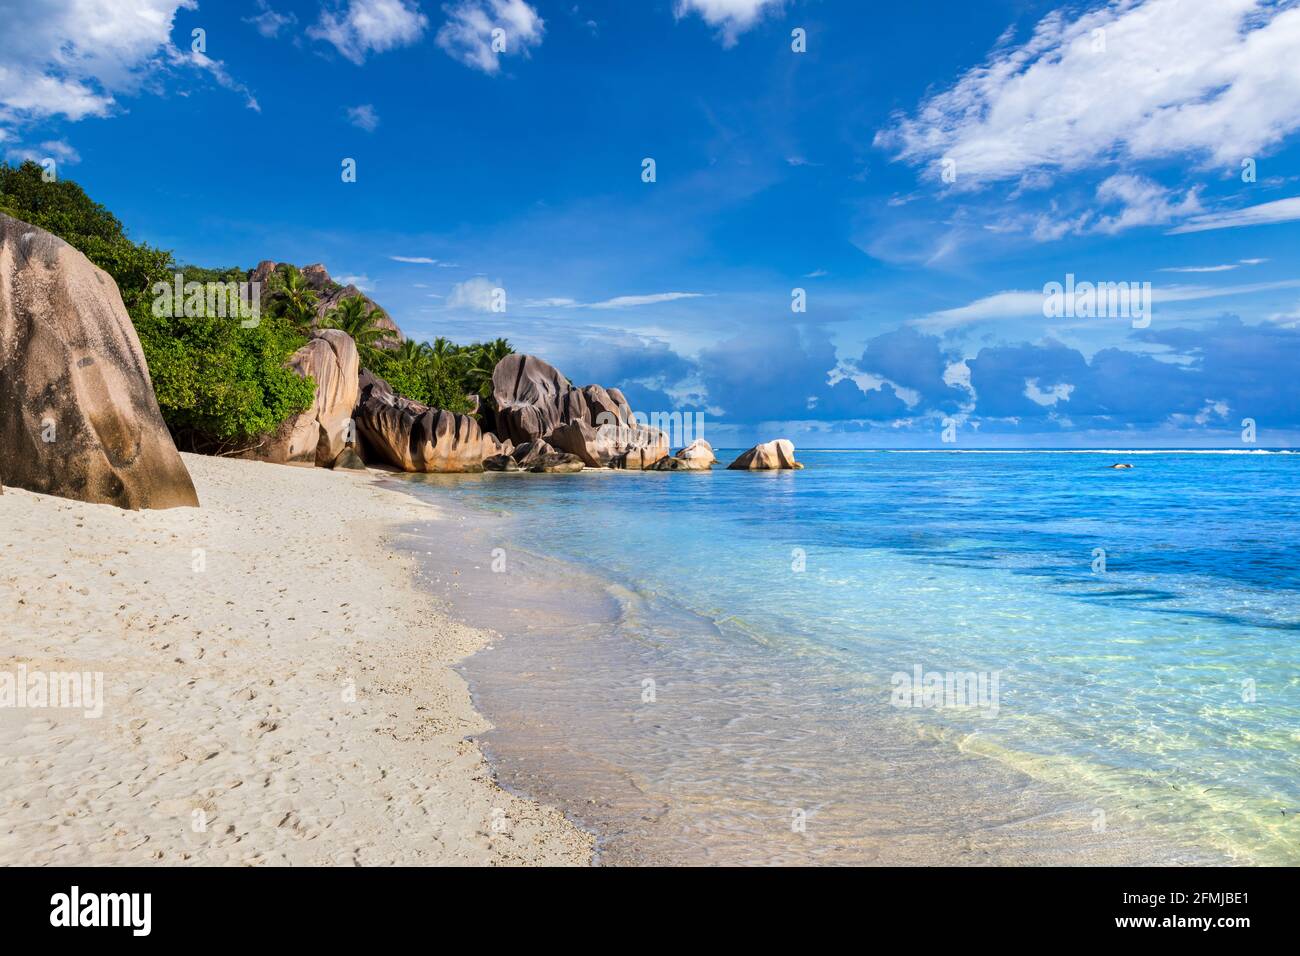 Destination vacances d'été à la plage, Anse Source d'argent à la Digue Seychelles. Île tropicale paradisiaque dans l'océan Indien avec blanc immaculé Banque D'Images